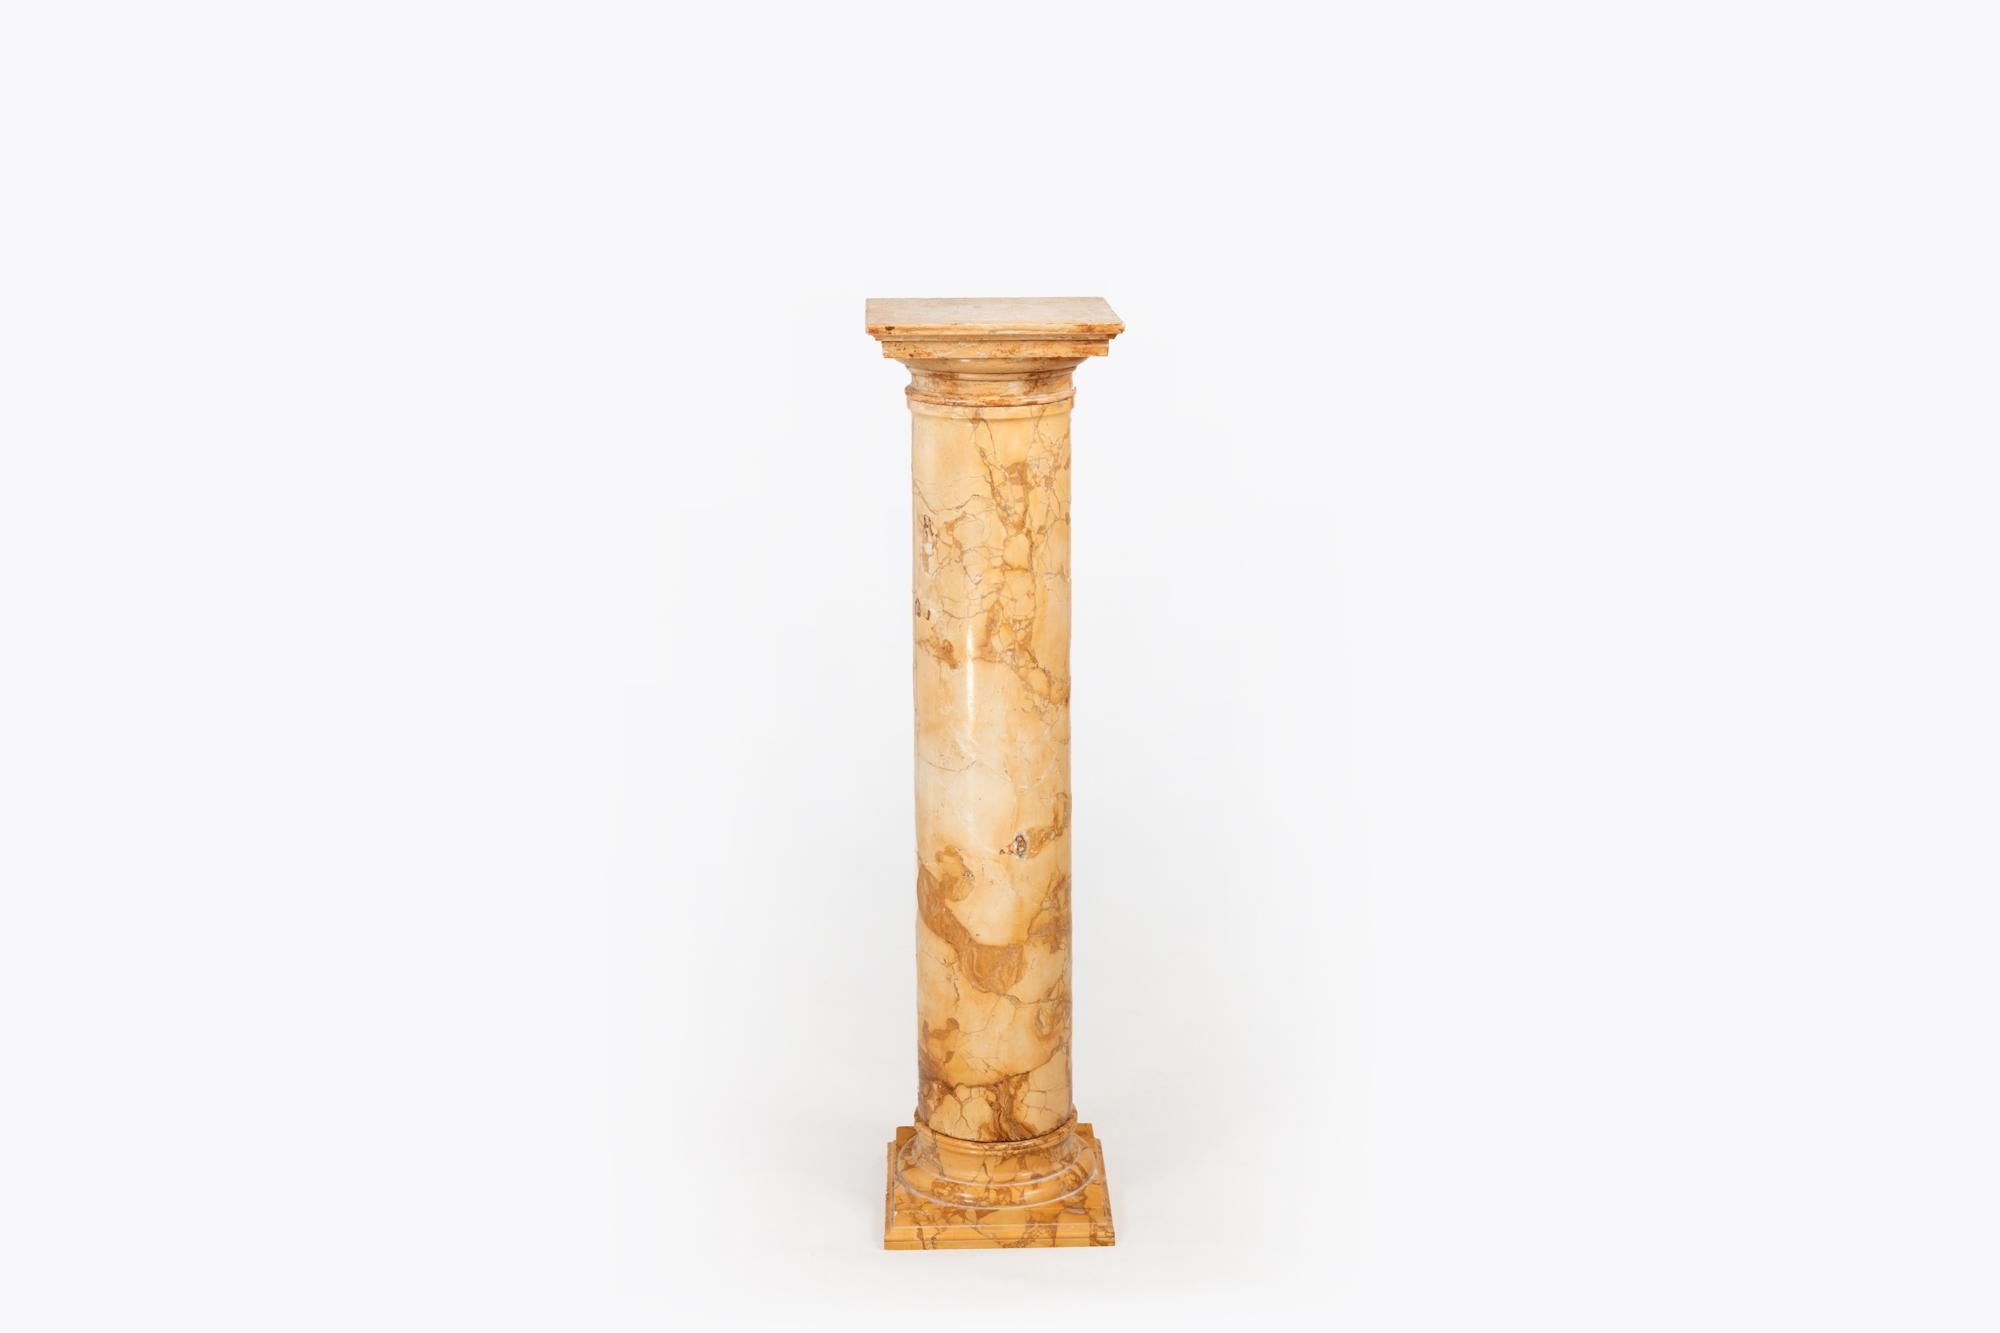 Socle en marbre du 19e siècle en forme de colonne classique. Le fût cylindrique massif en marbre jaune et ocre repose sur une base carrée à gradins et est surmonté d'une plaque de marbre carrée reposant sur le sommet de la colonne.